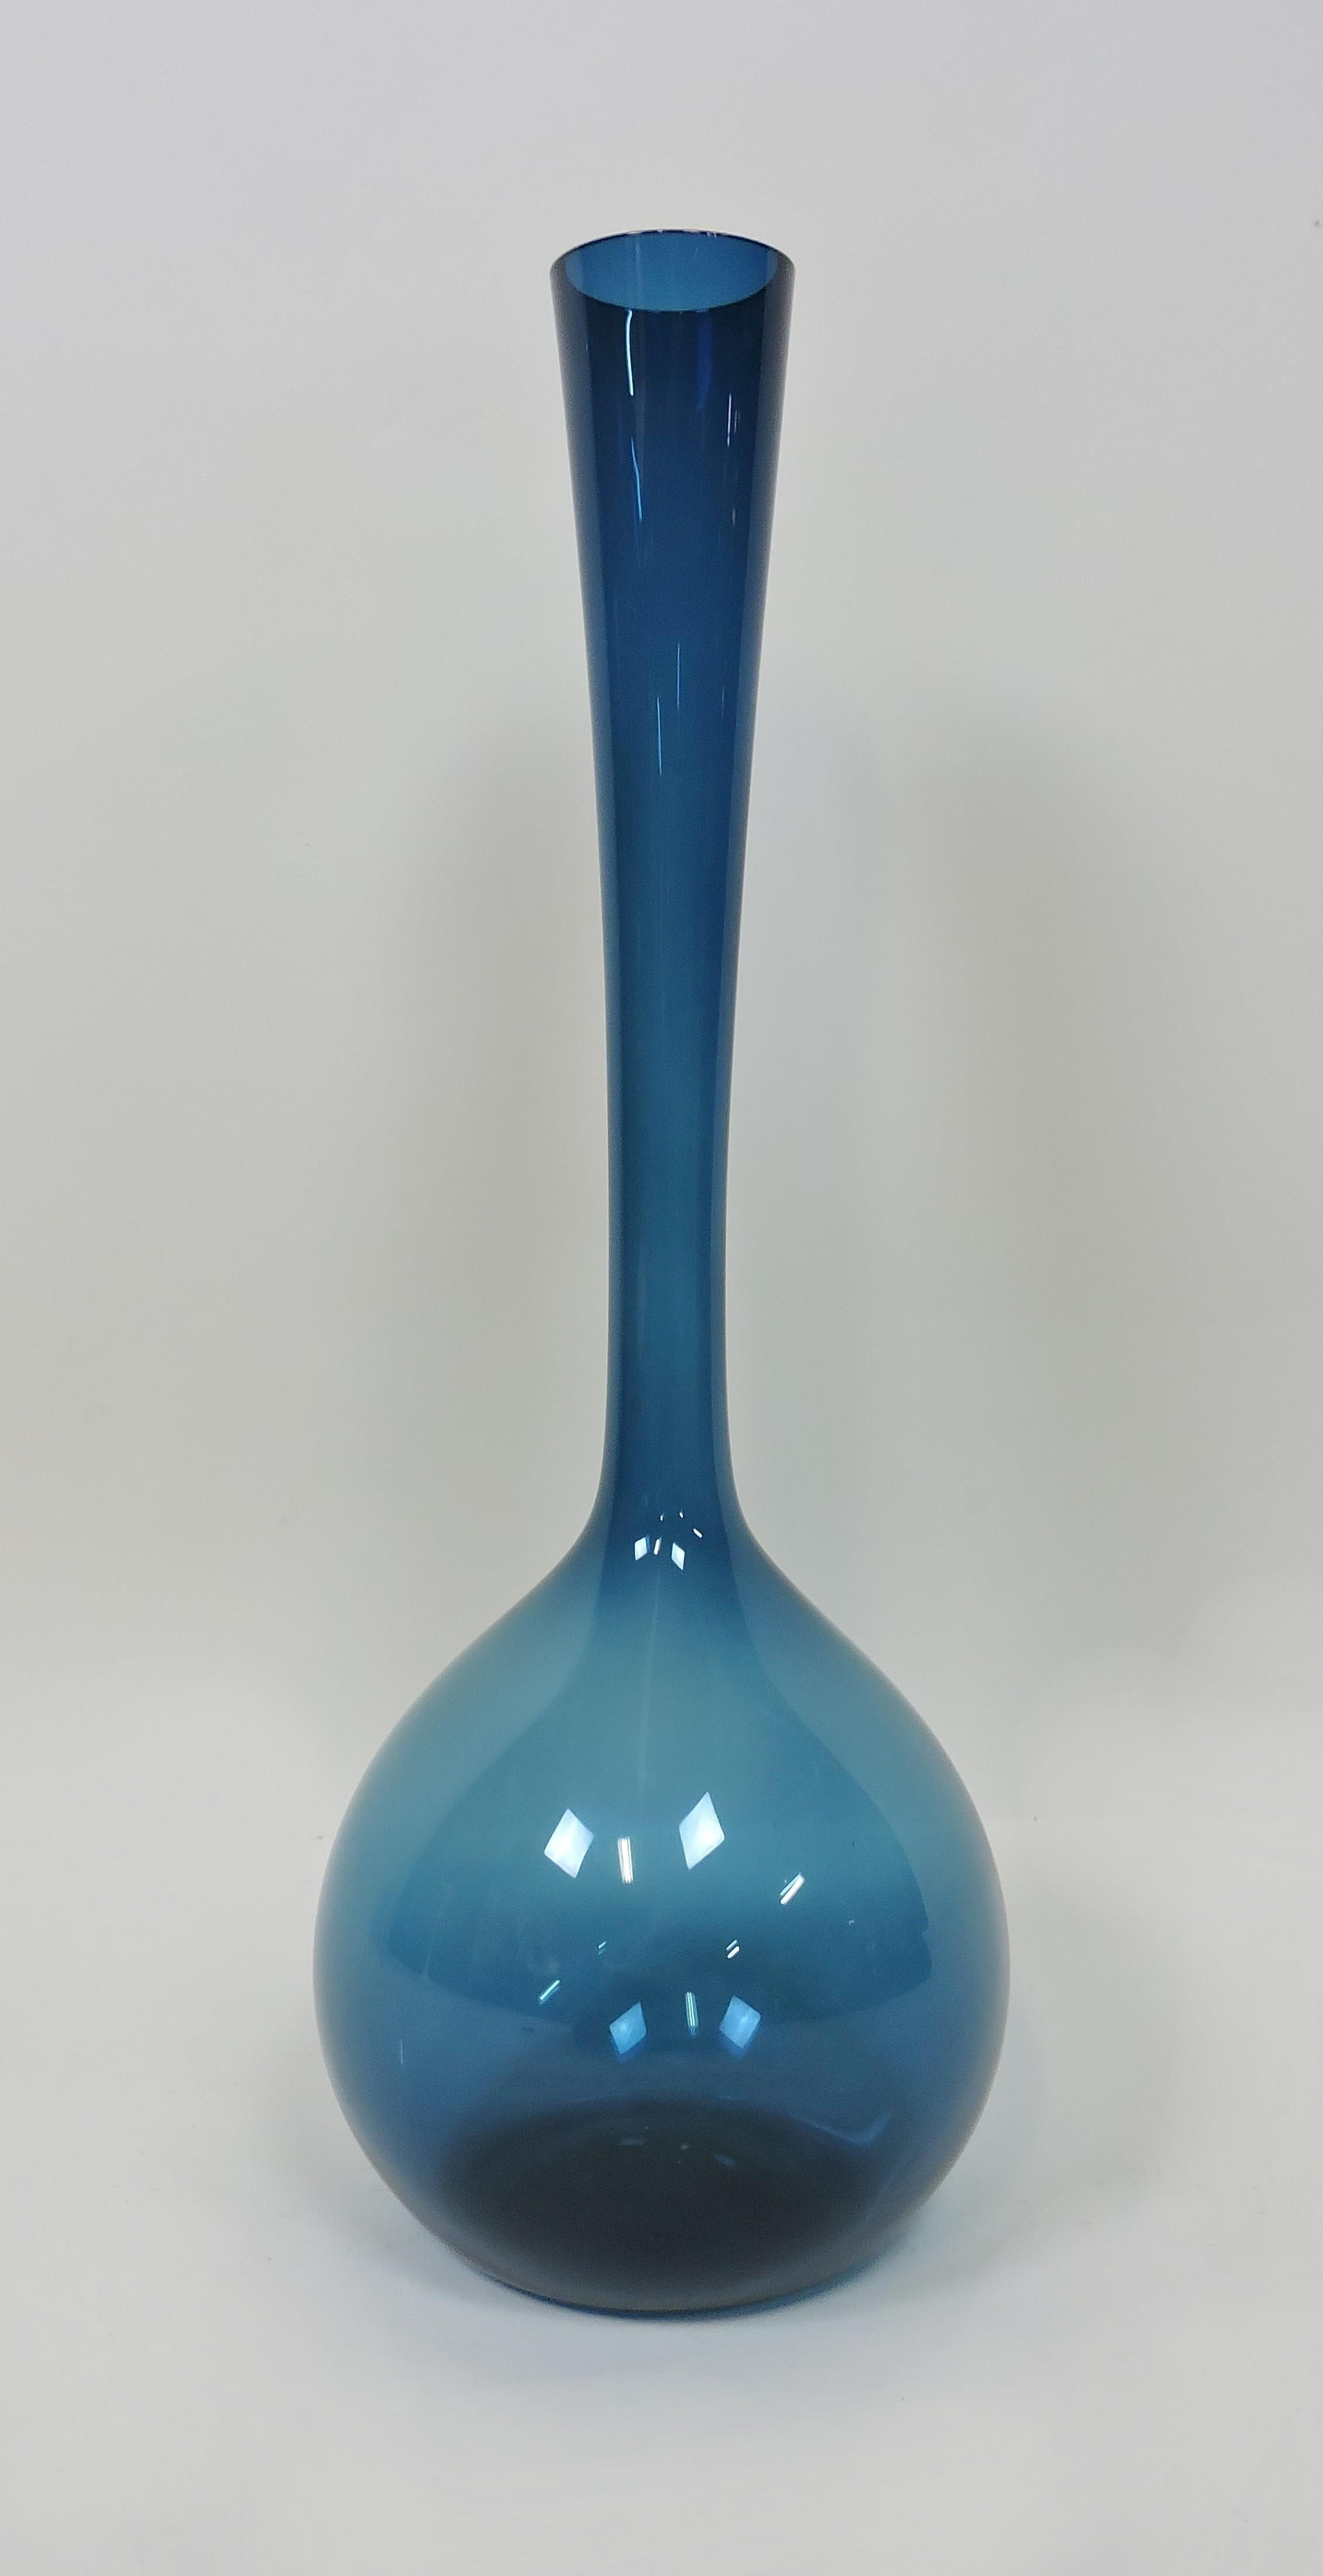 Grand et impressionnant vase à bulbe soufflé à la main par Arthur Percy et fabriqué en Suède par Gullaskruf. Ce vase mesure près de 20